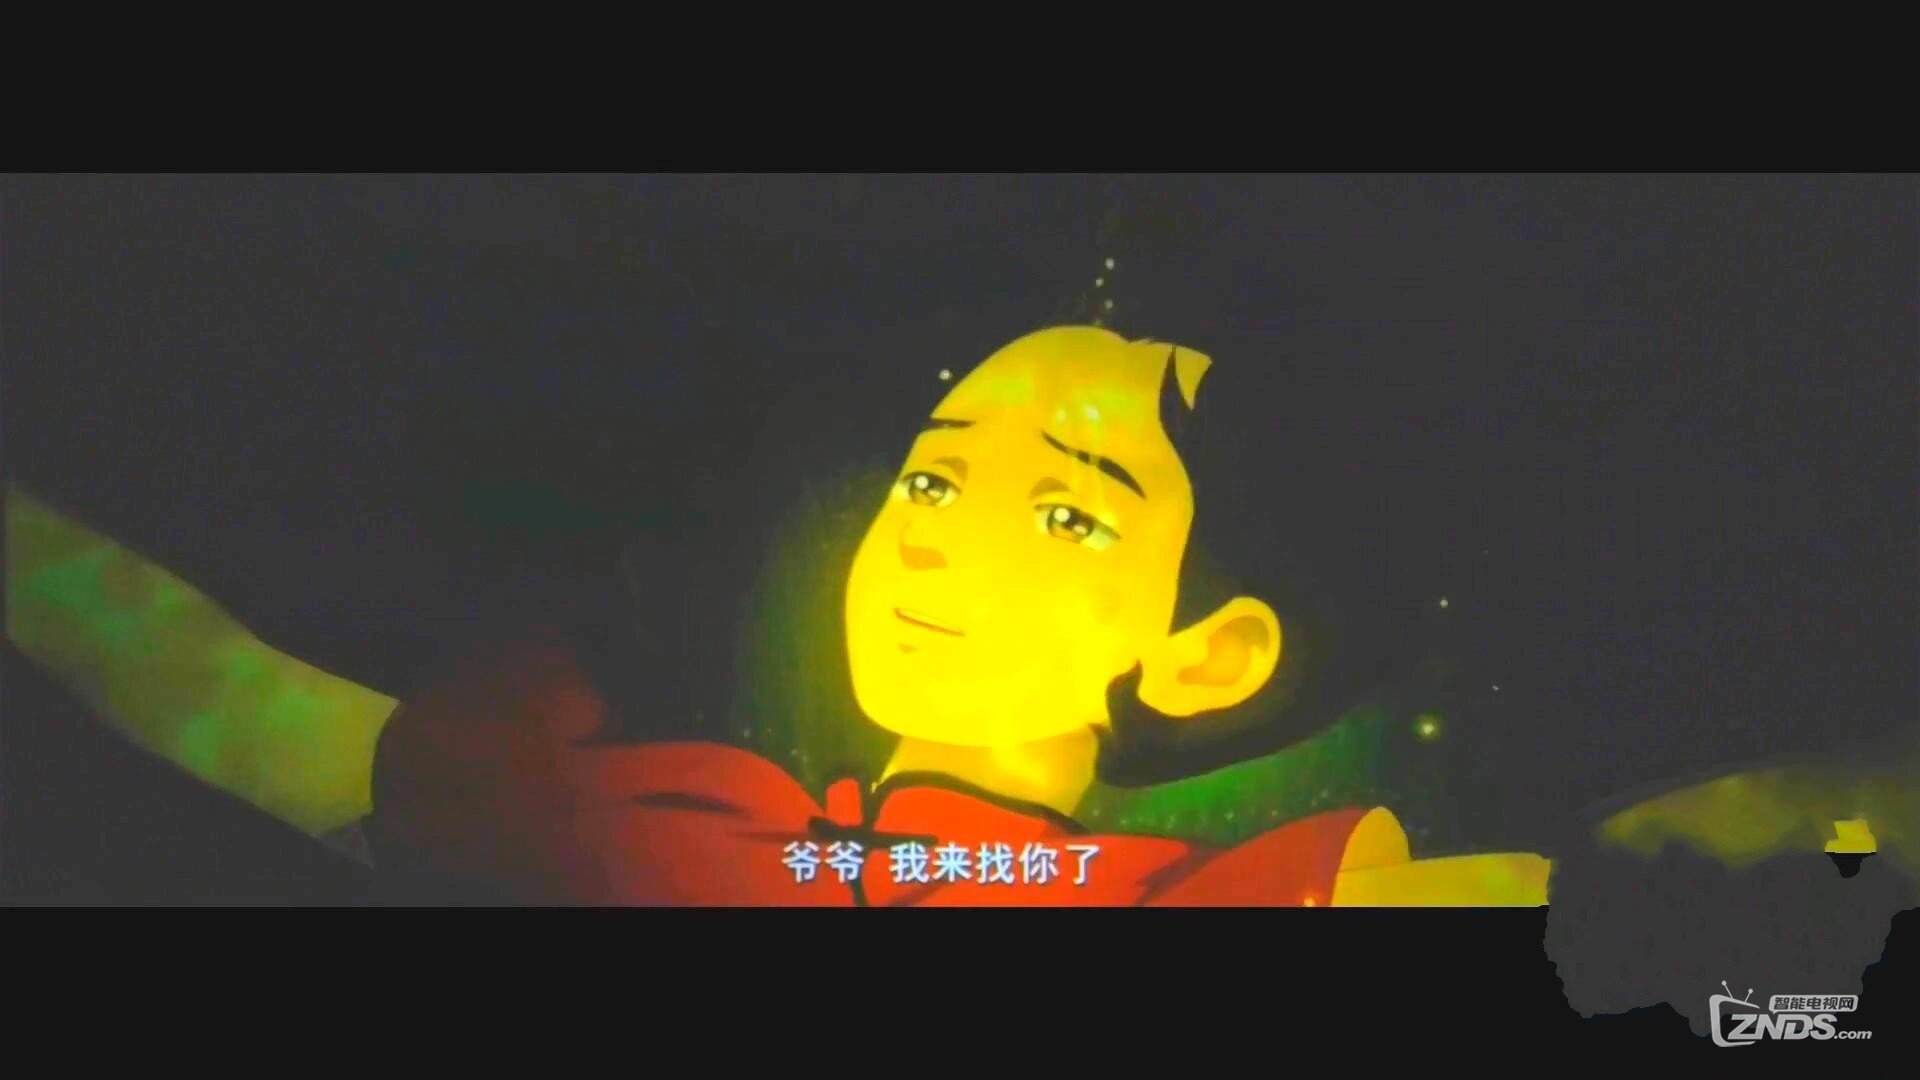 2016中国大陆奇幻动画片《大鱼海棠》HD128